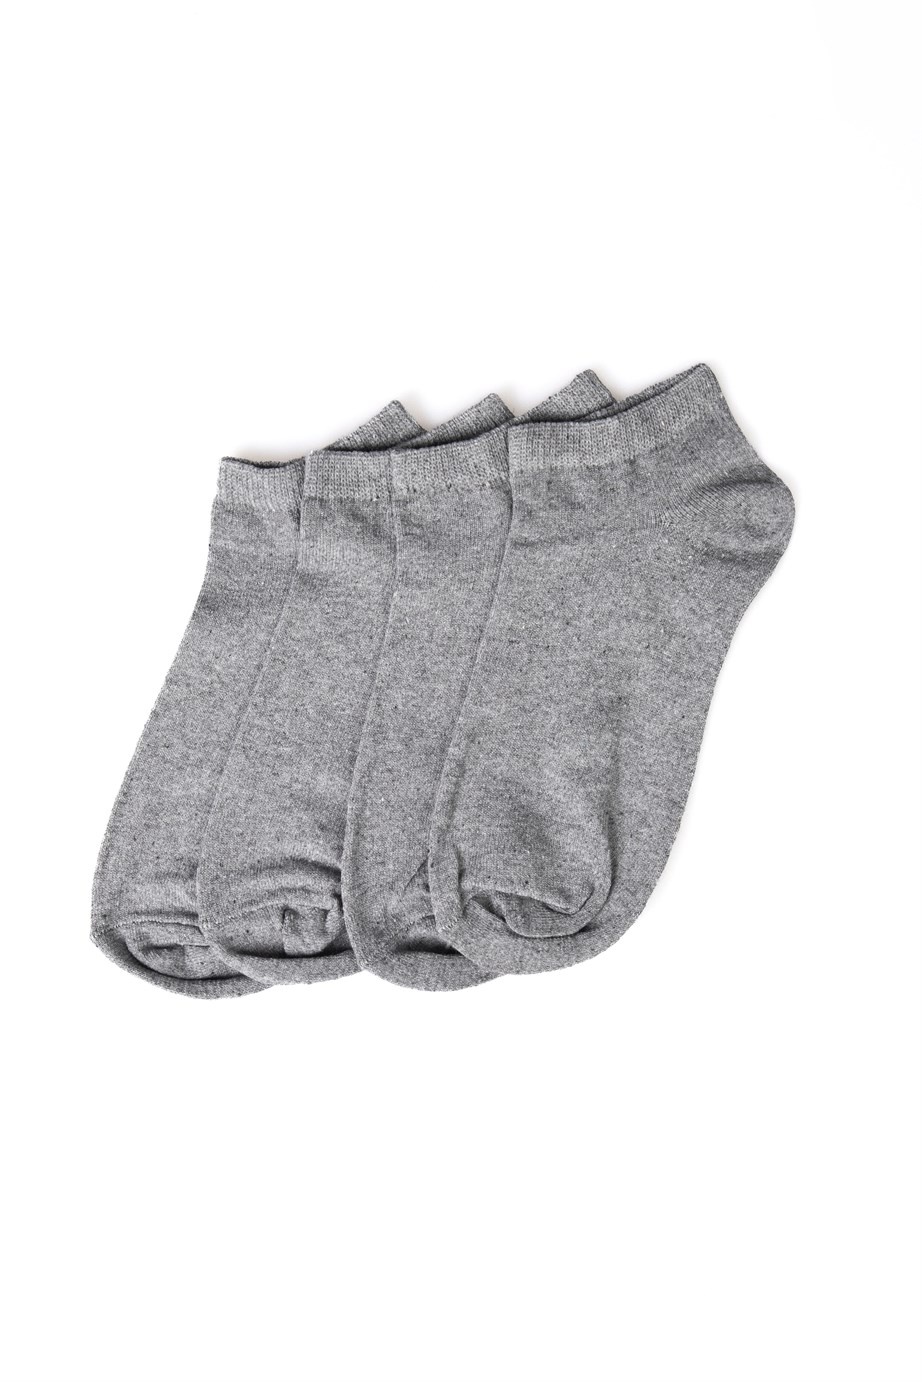 Plain Grey Socks